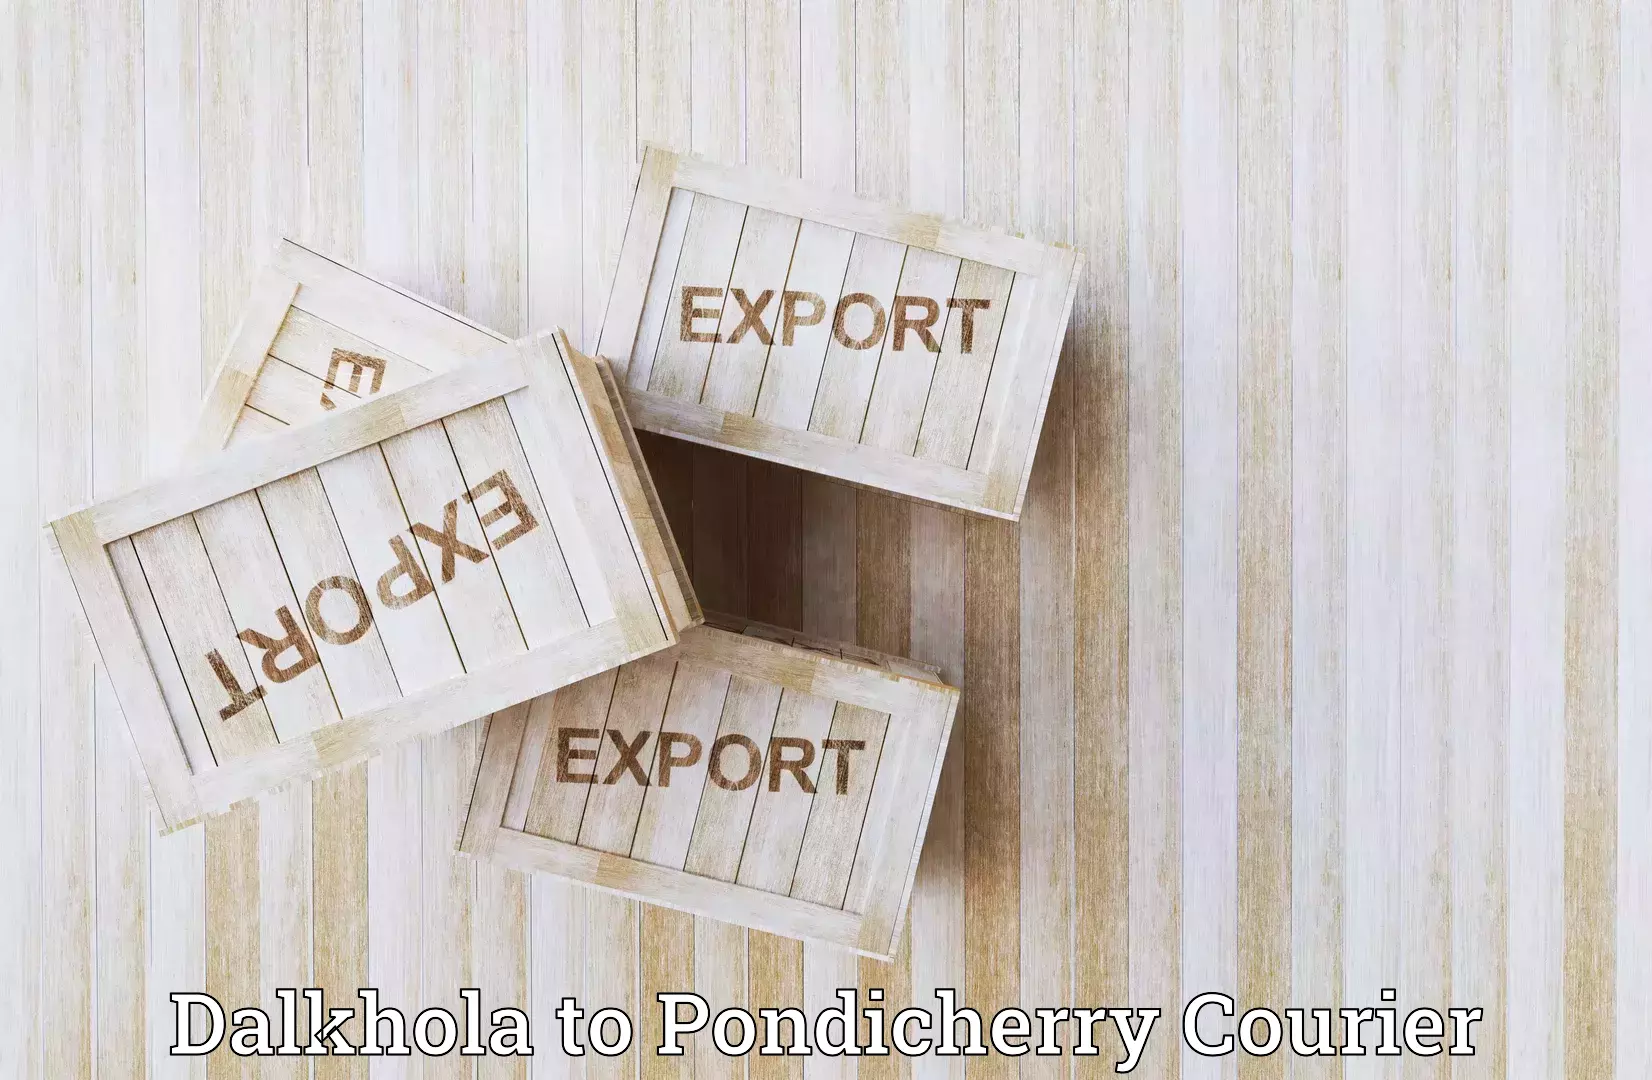 Courier service innovation Dalkhola to Pondicherry University